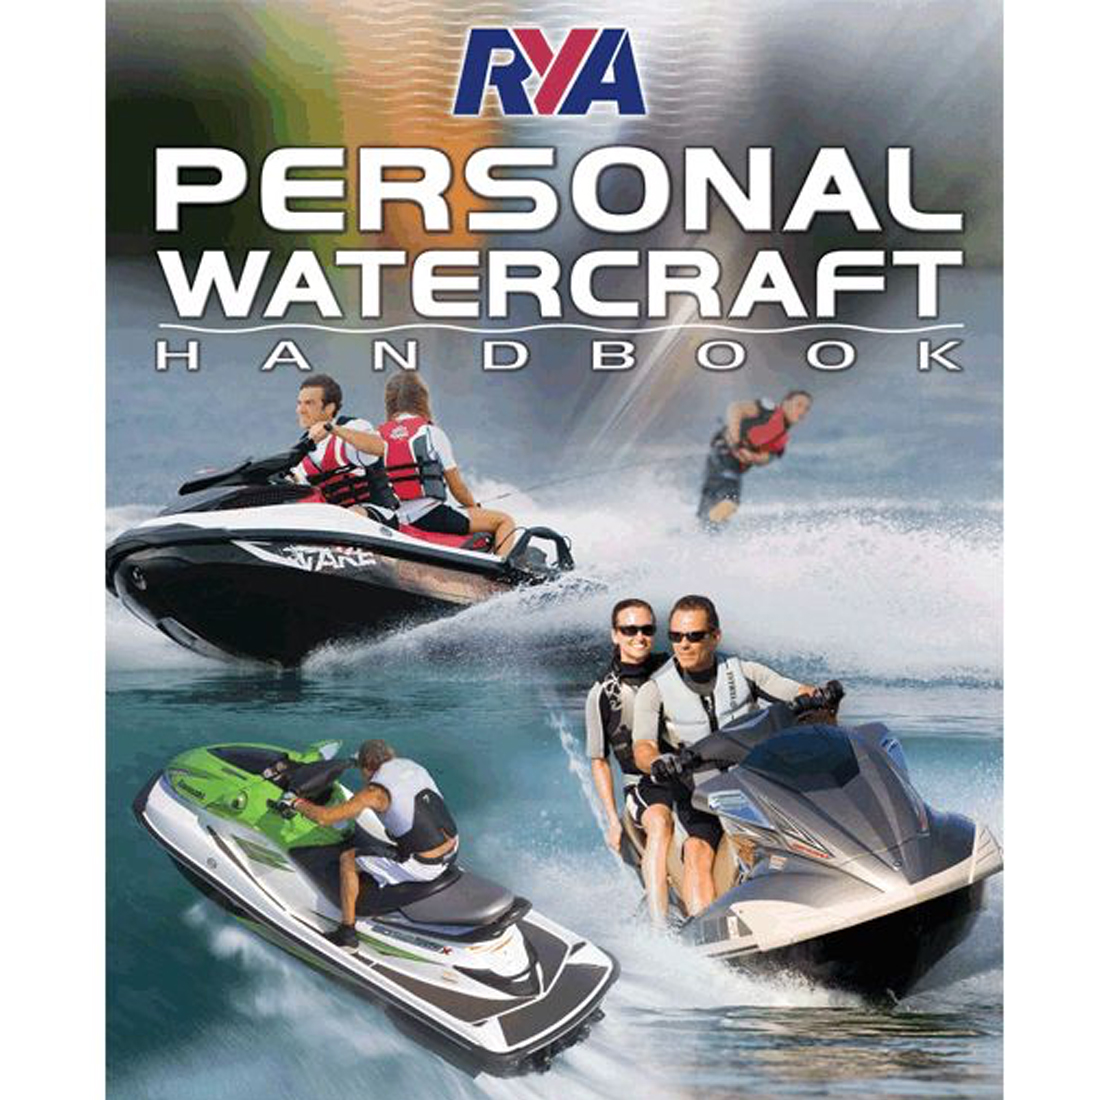 rya-personal-watercraft